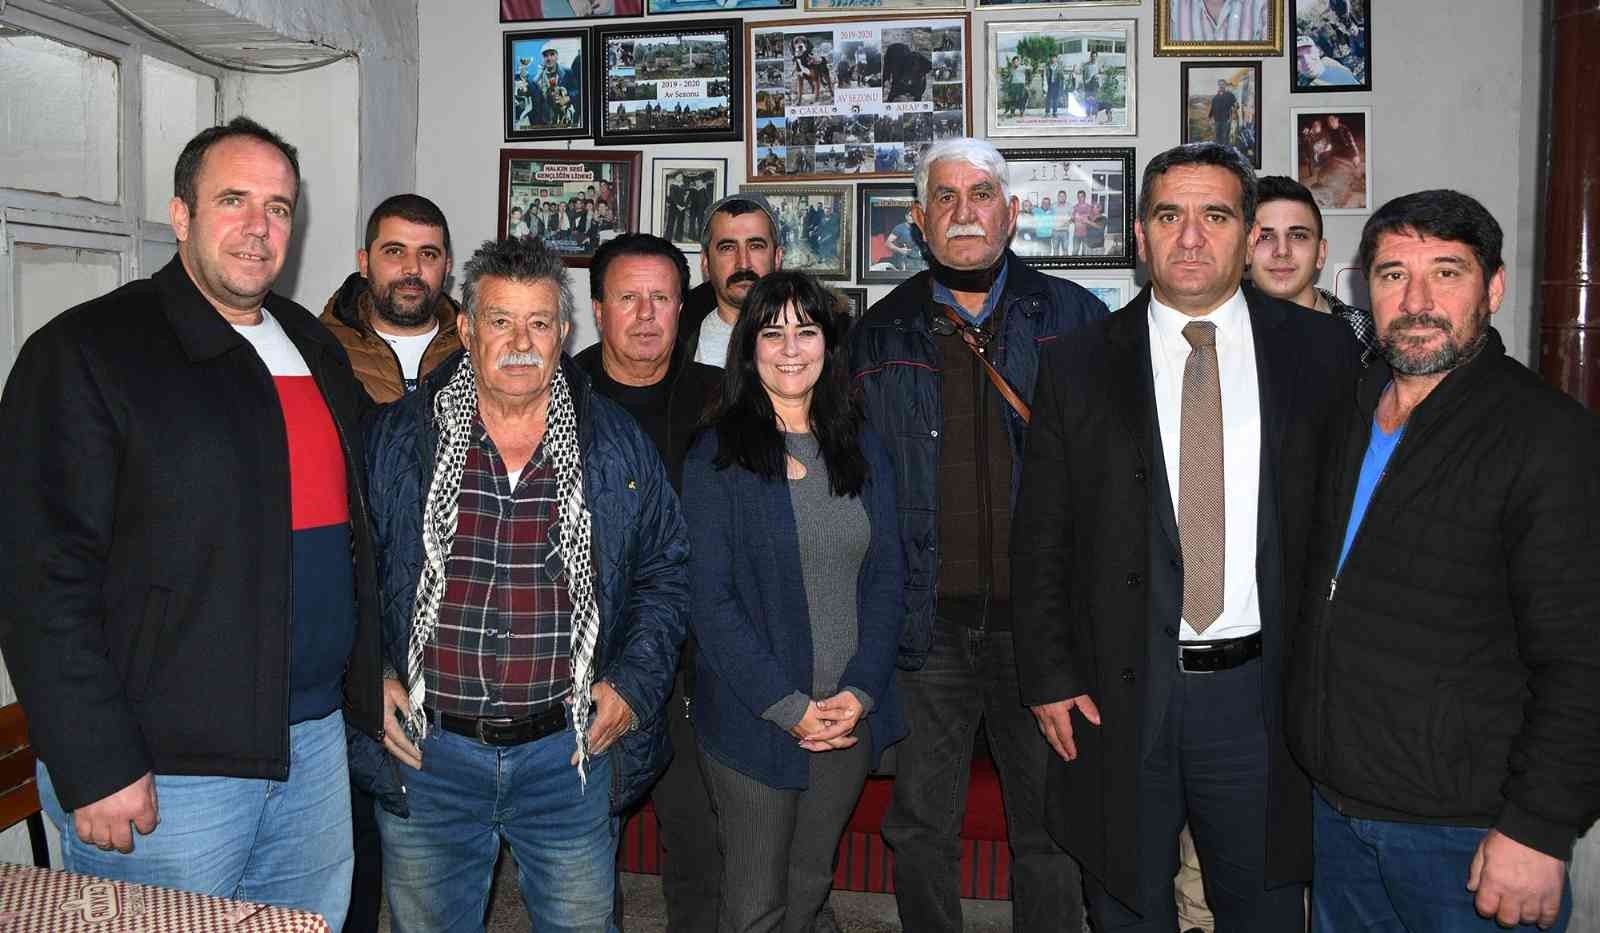 Kuşadası Belediyesi yöneticileri STK ziyaretlerini sürdürüyor